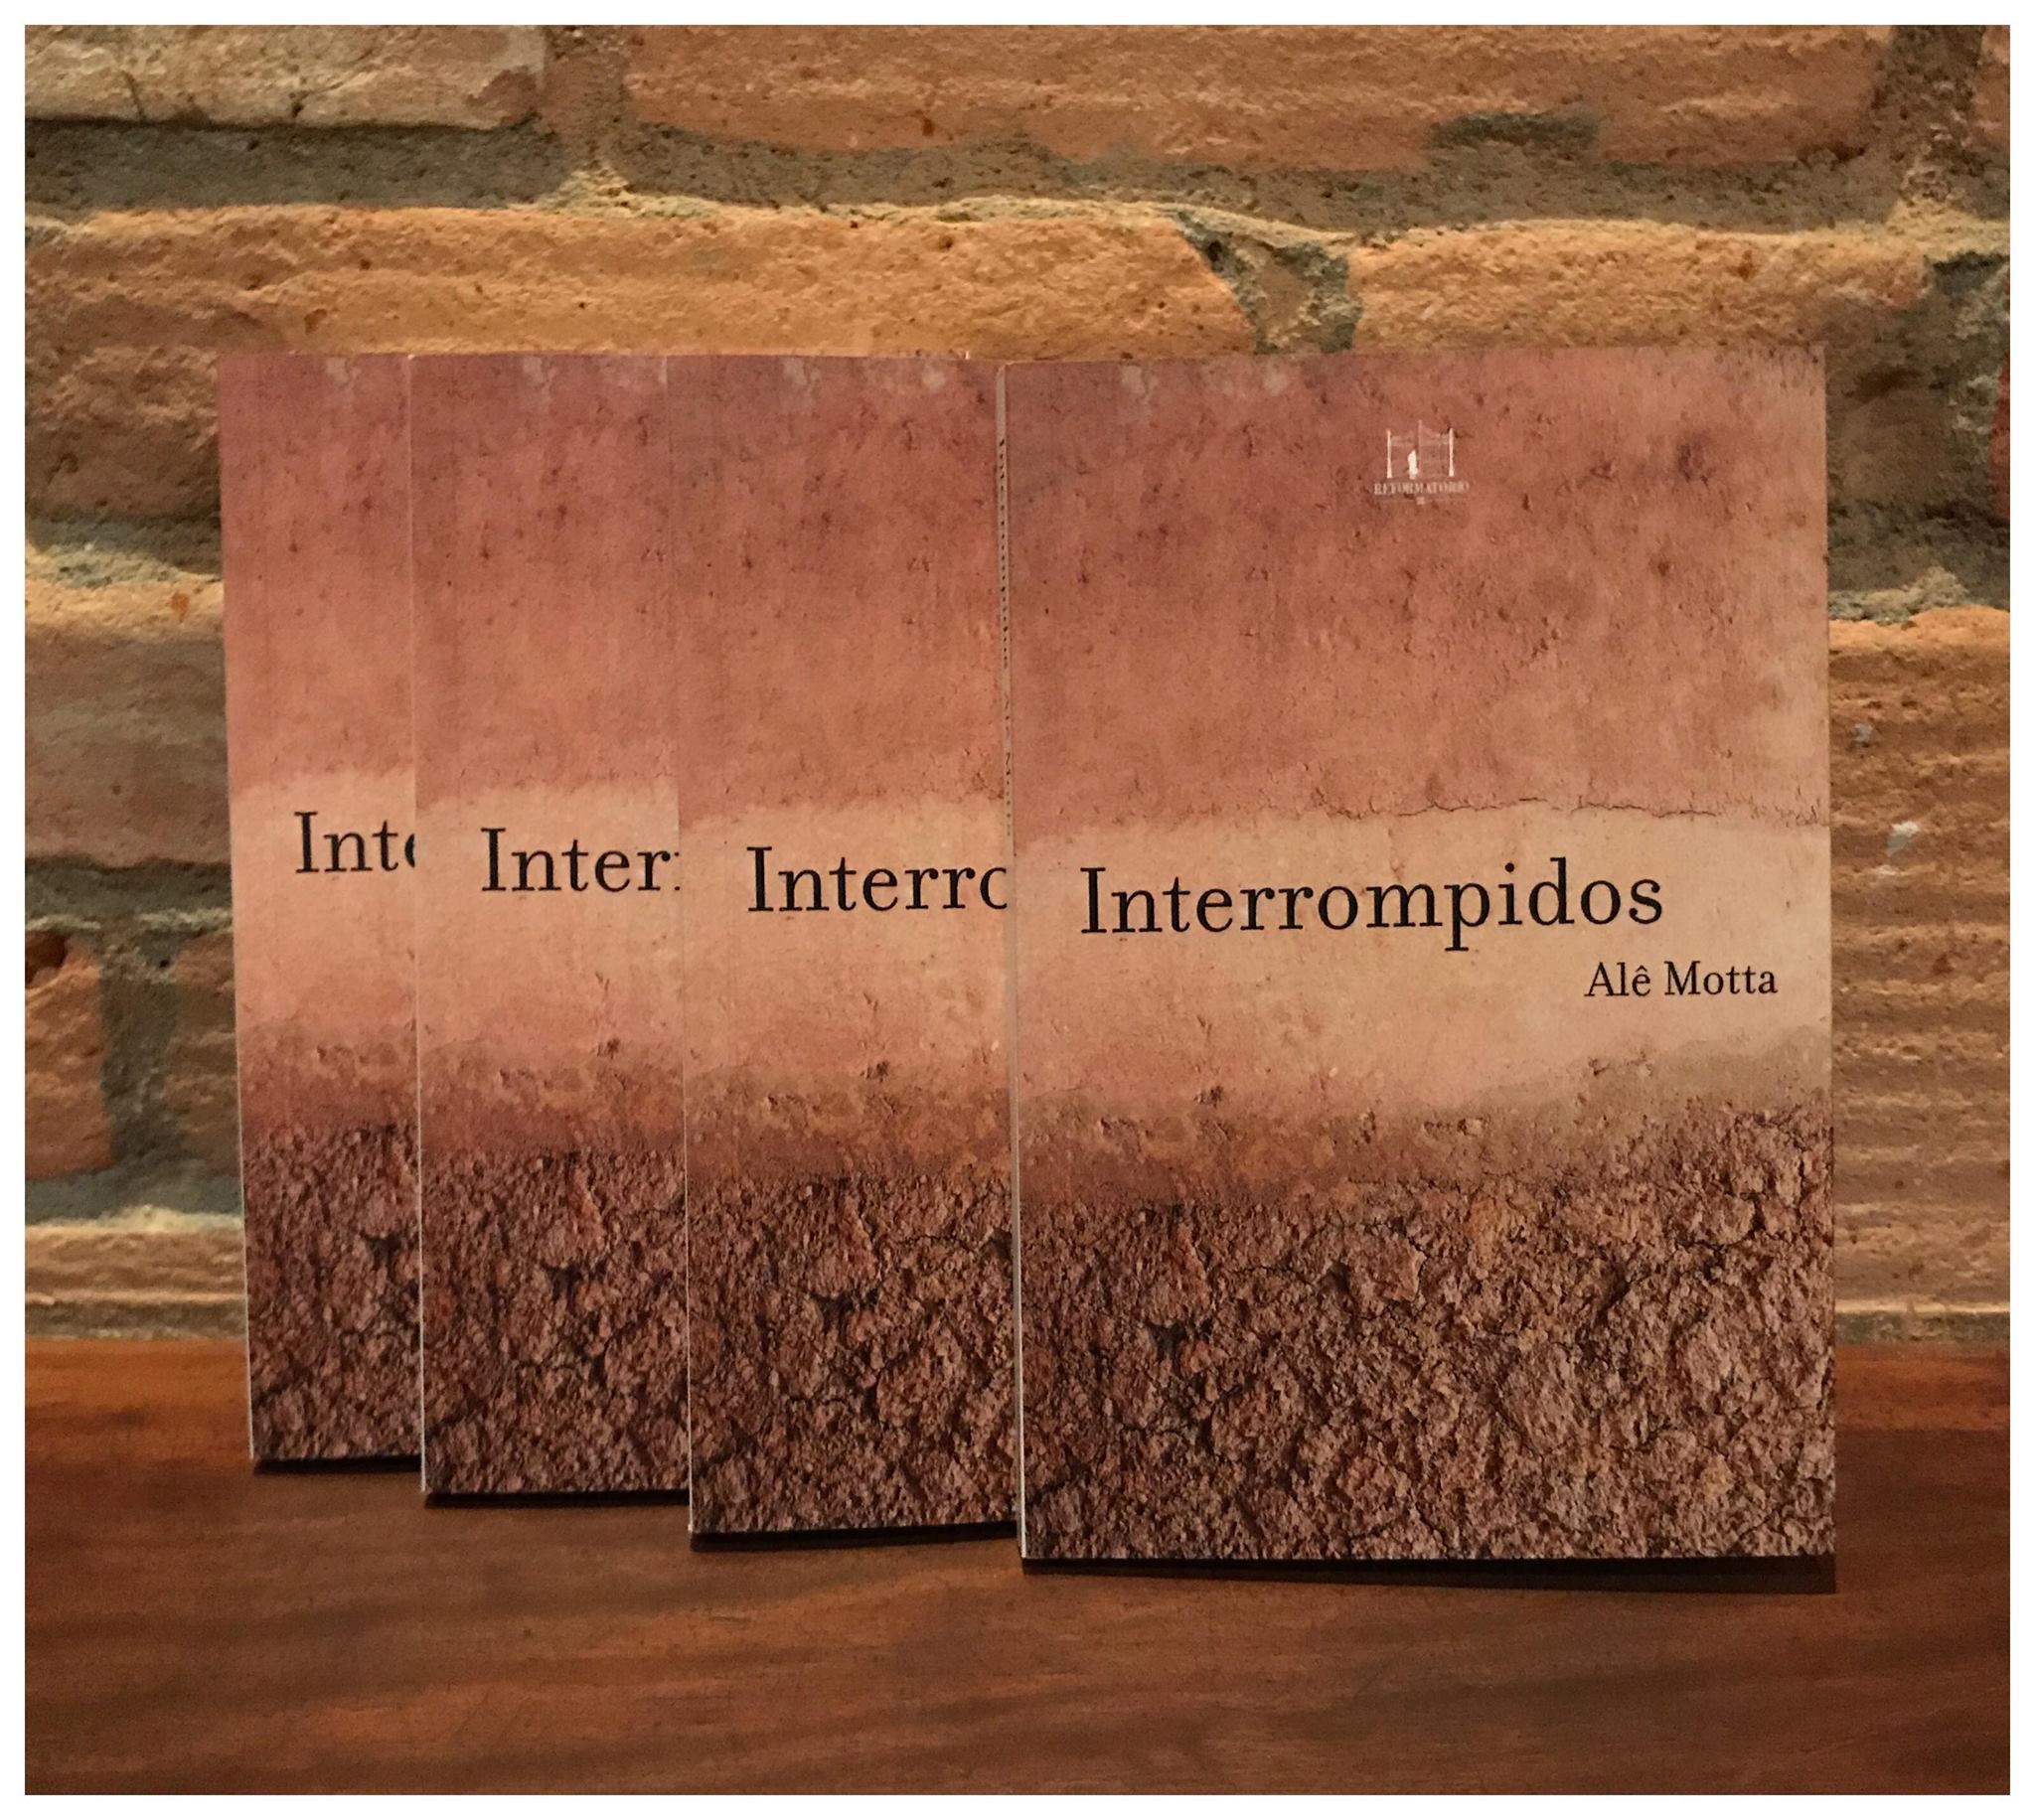 interrompidos - O livro de contos Interrompidos de Alê Motta, da vida à expiração, um inquieto diálogo com a finitude.